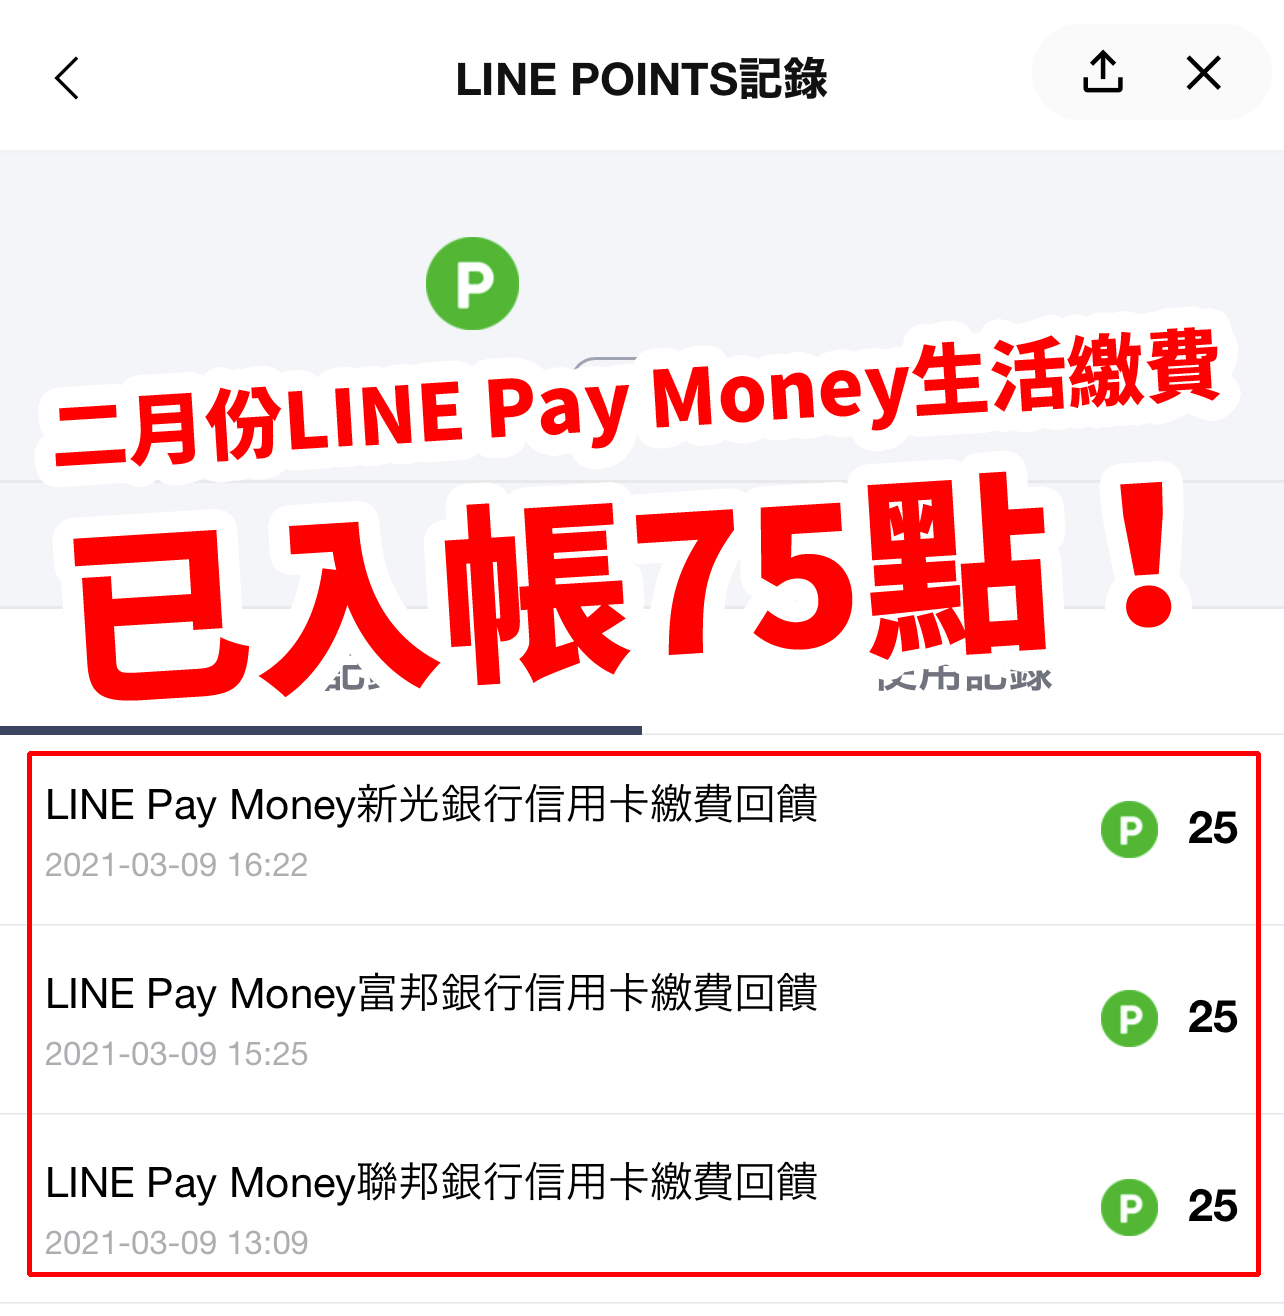 Line Pay Money 地虎支付繳卡費 月月多賺50點line Points 21 4 30